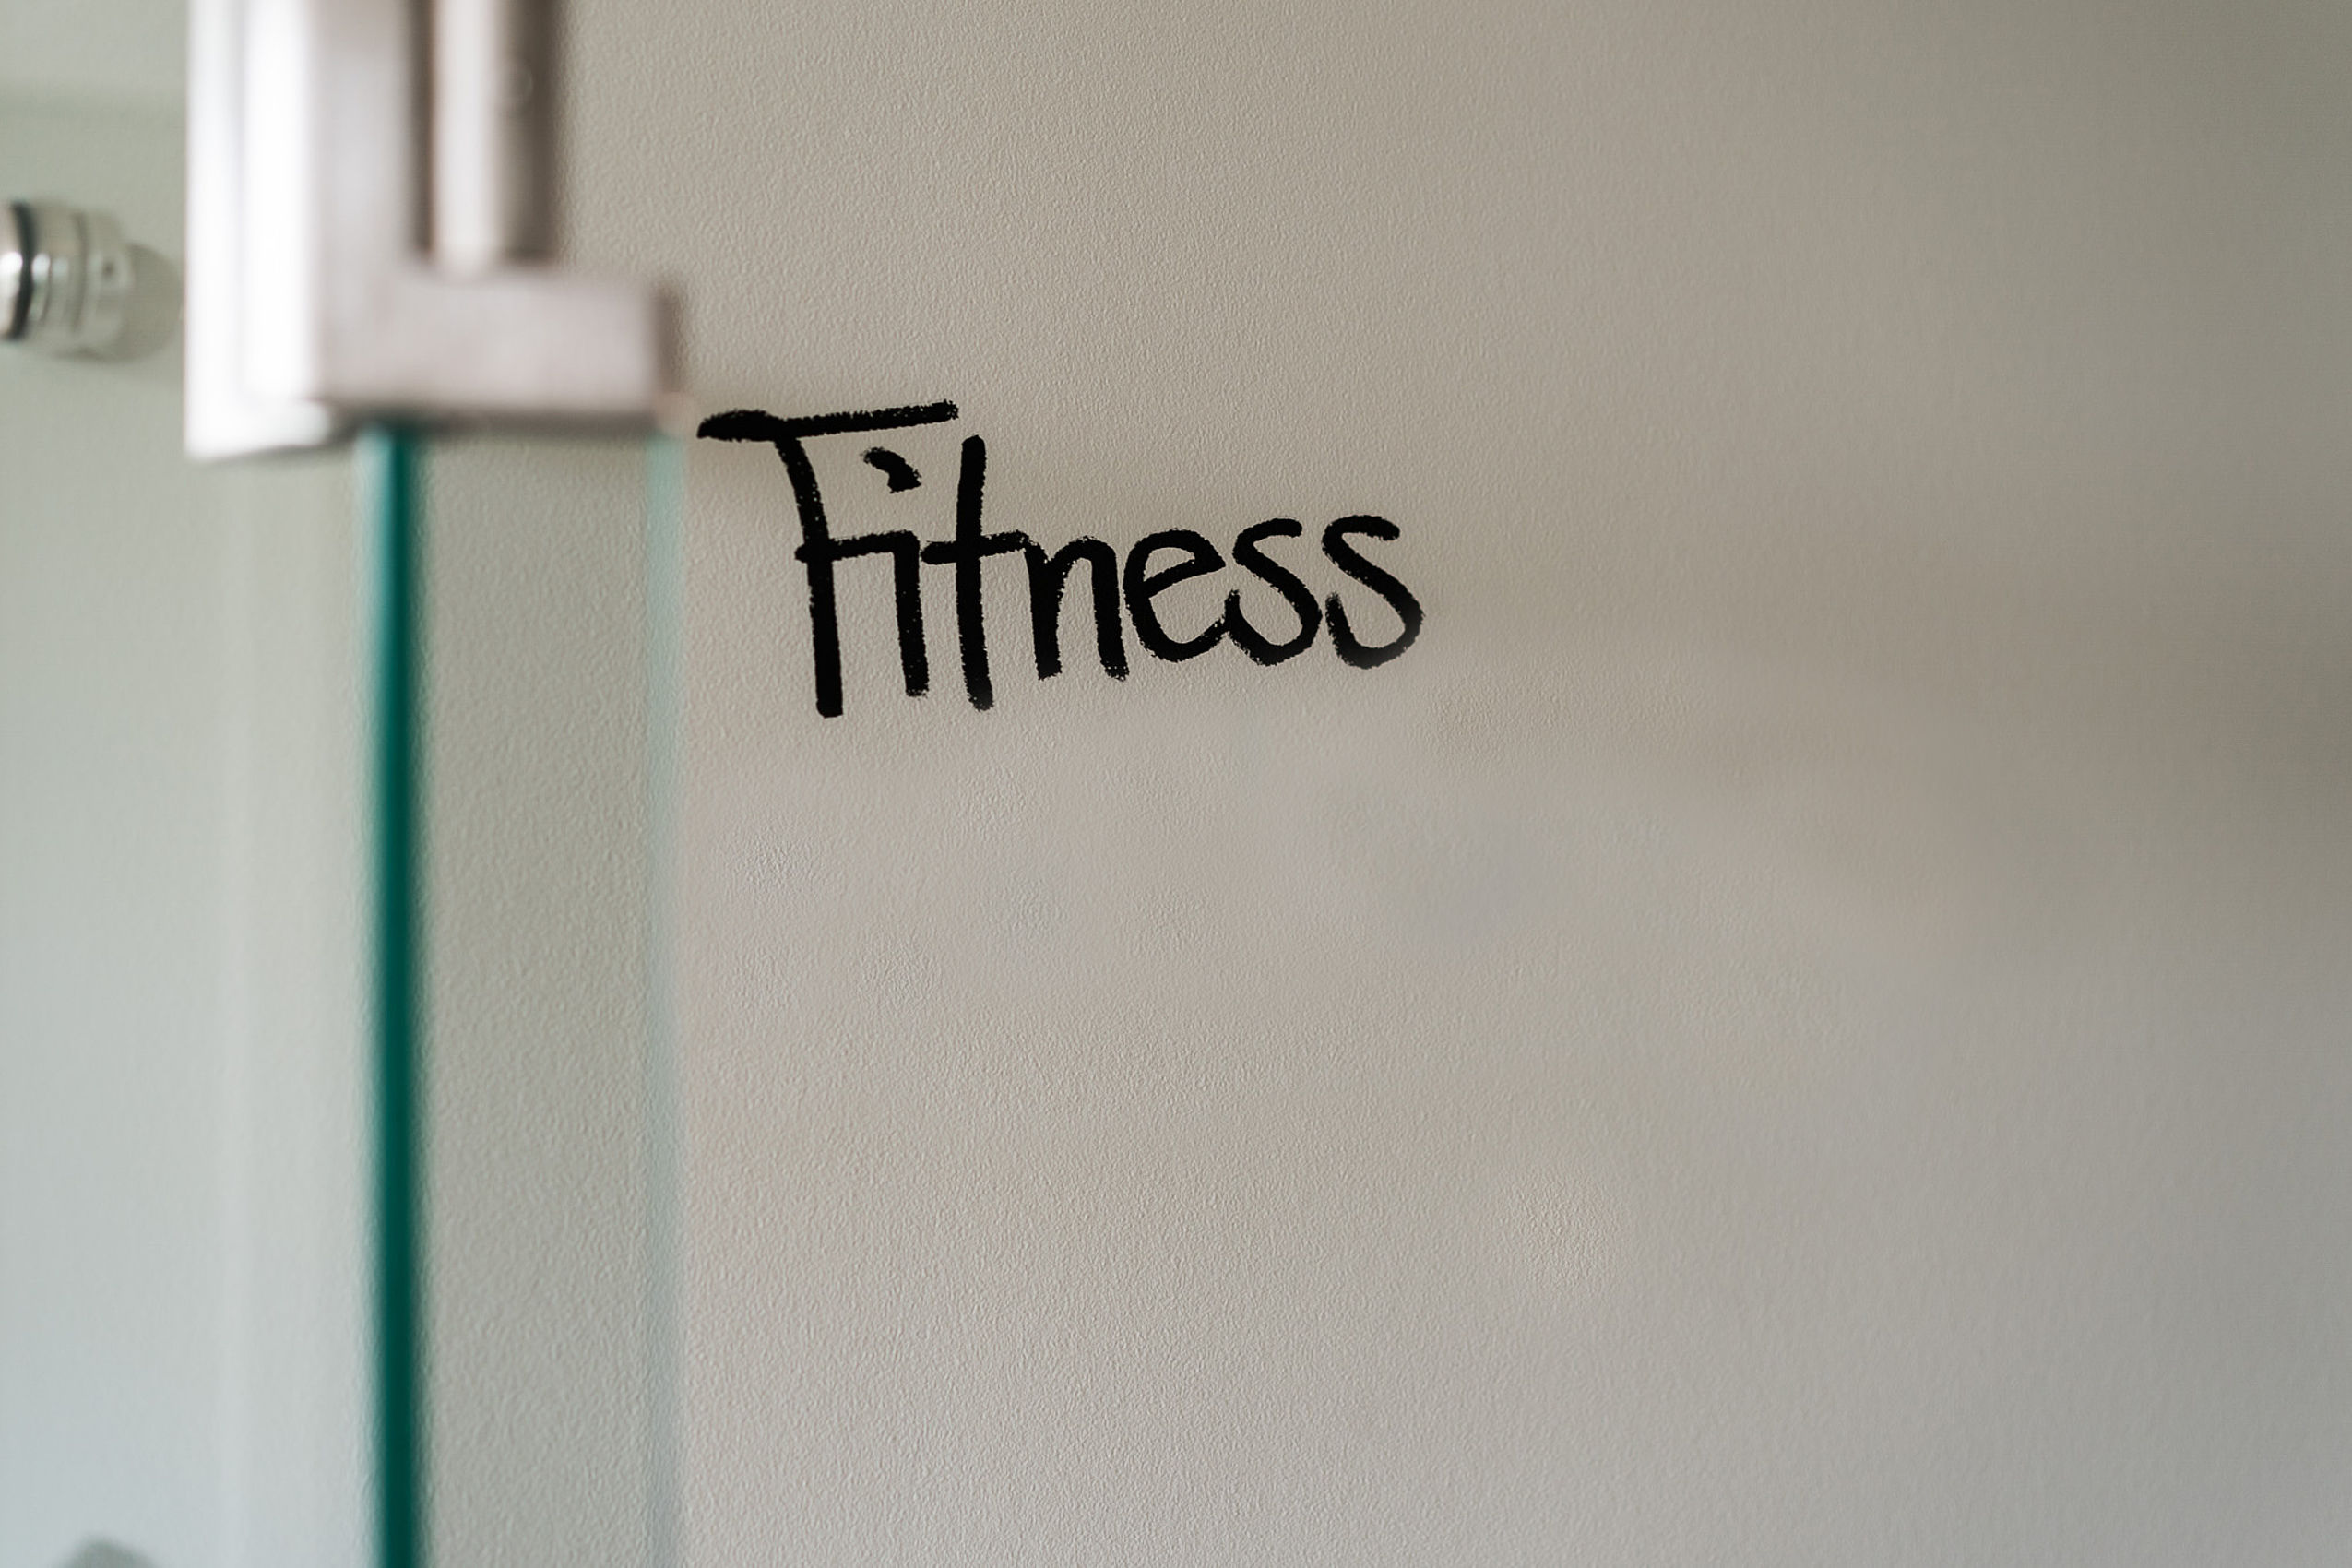 Das Wort Fitness in schwarzer Farbe auf eine weiße Wand geschrieben